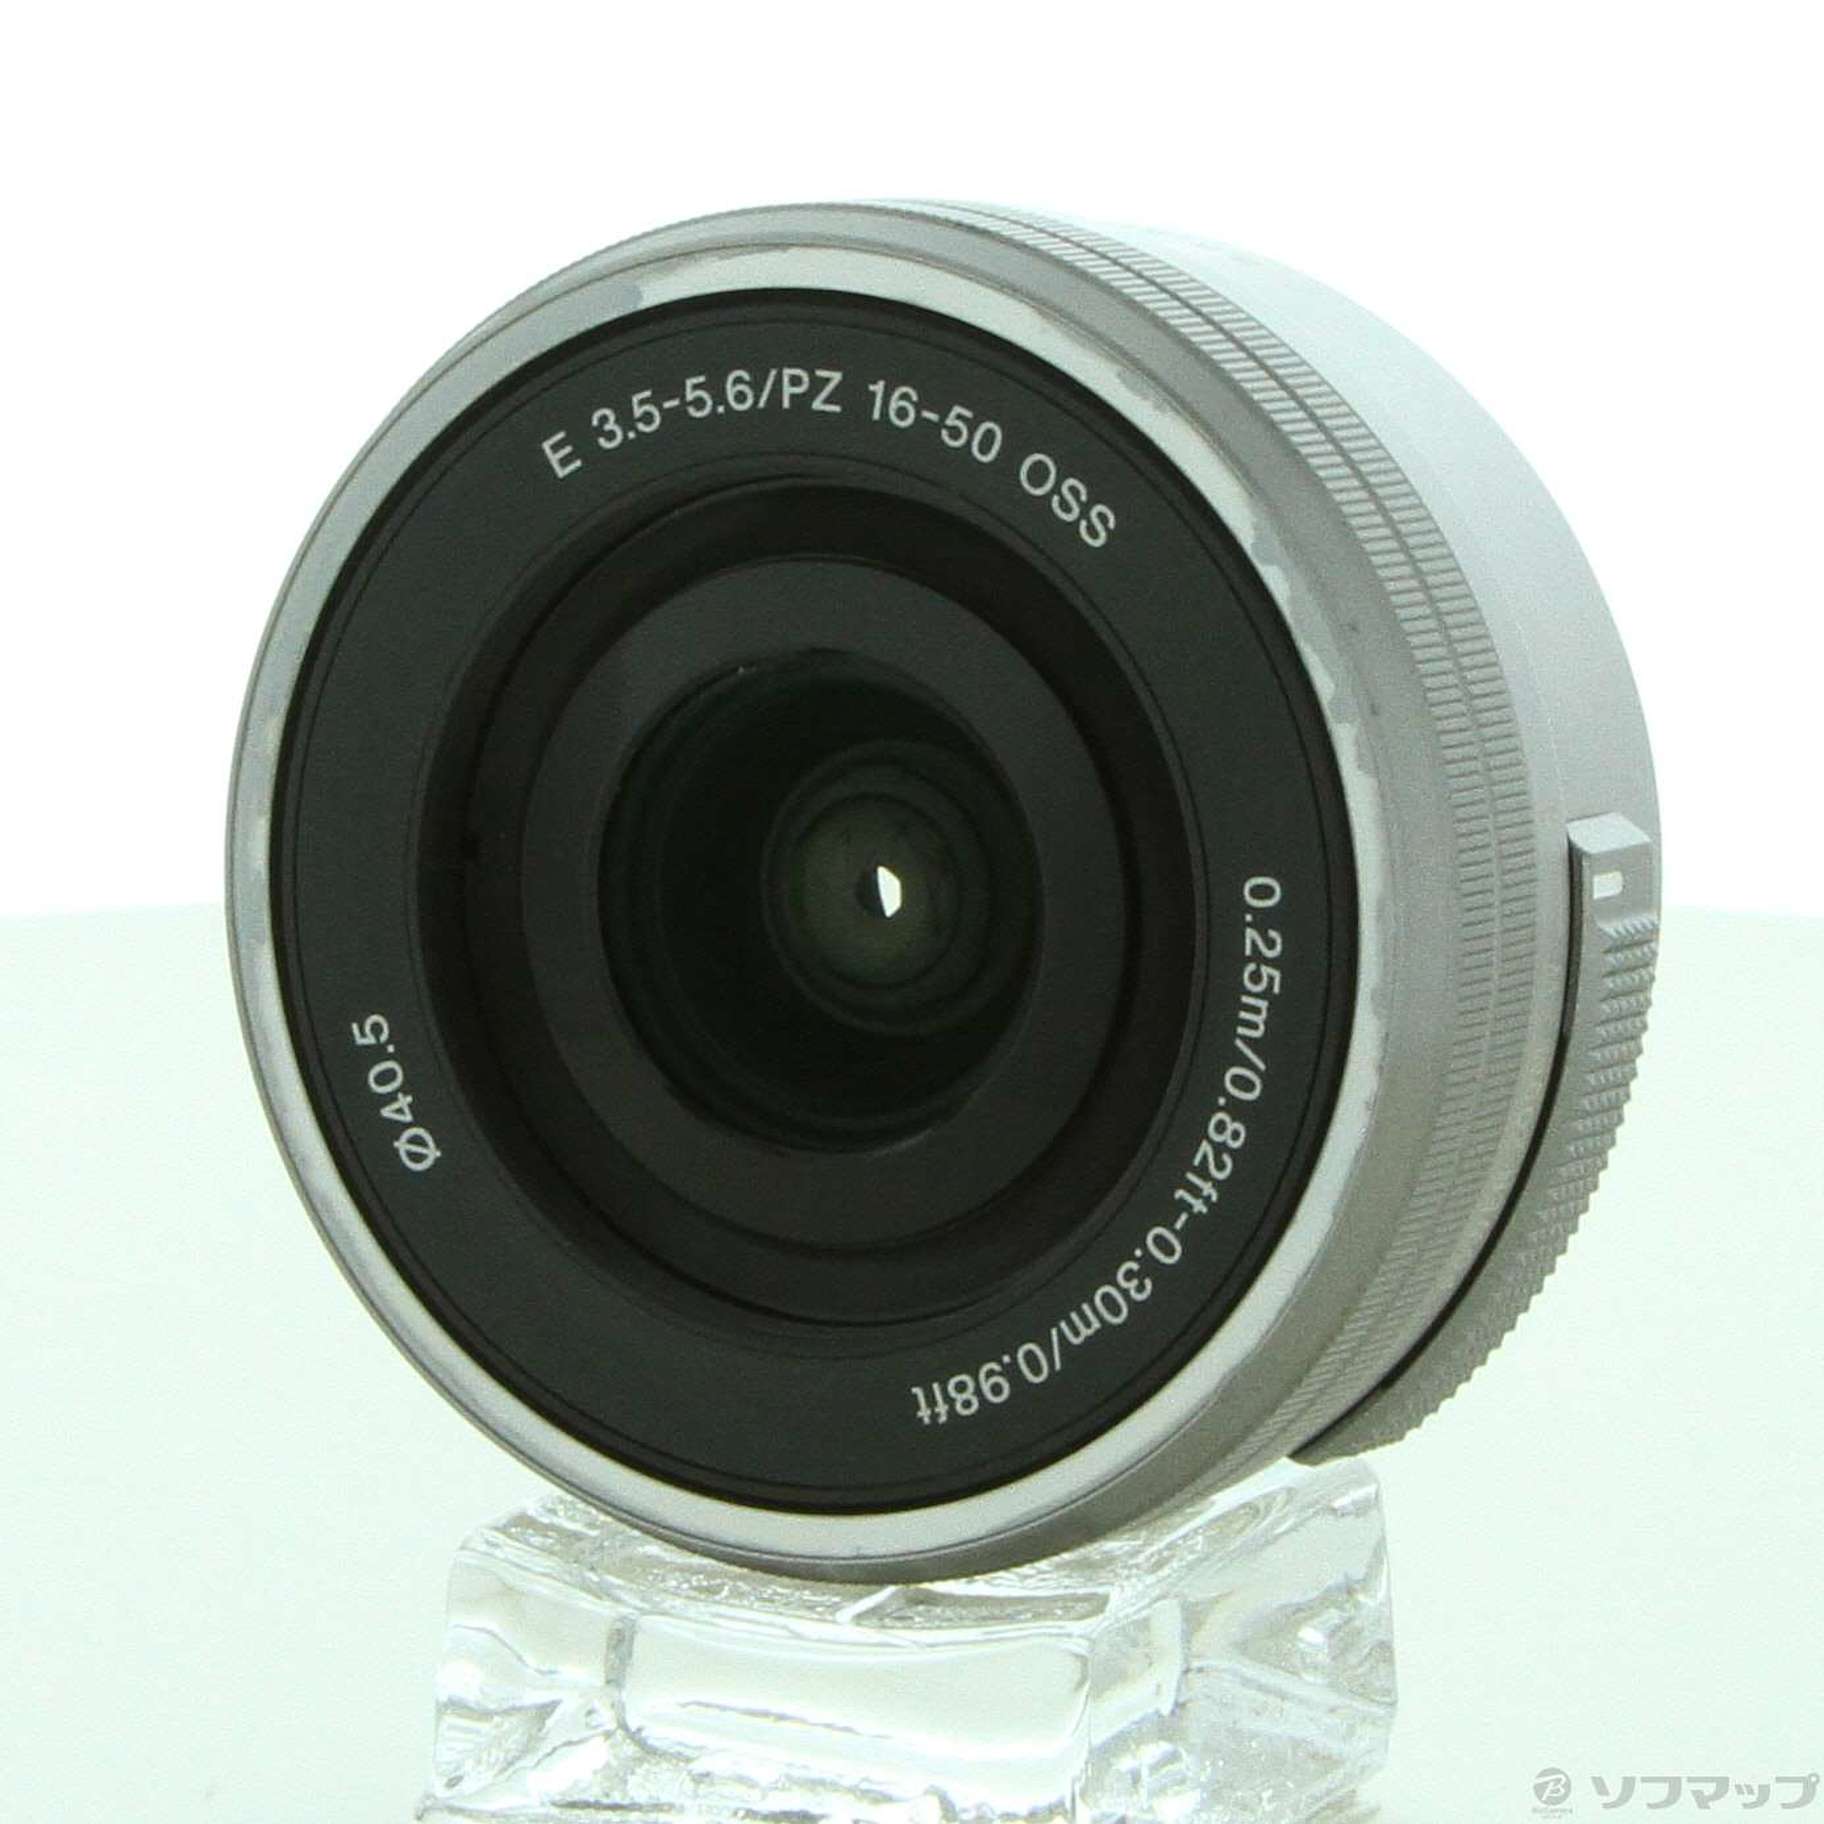 中古】E PZ 16-50mm F3.5-5.6 OSS SELP1650 (Eレンズ) シルバー